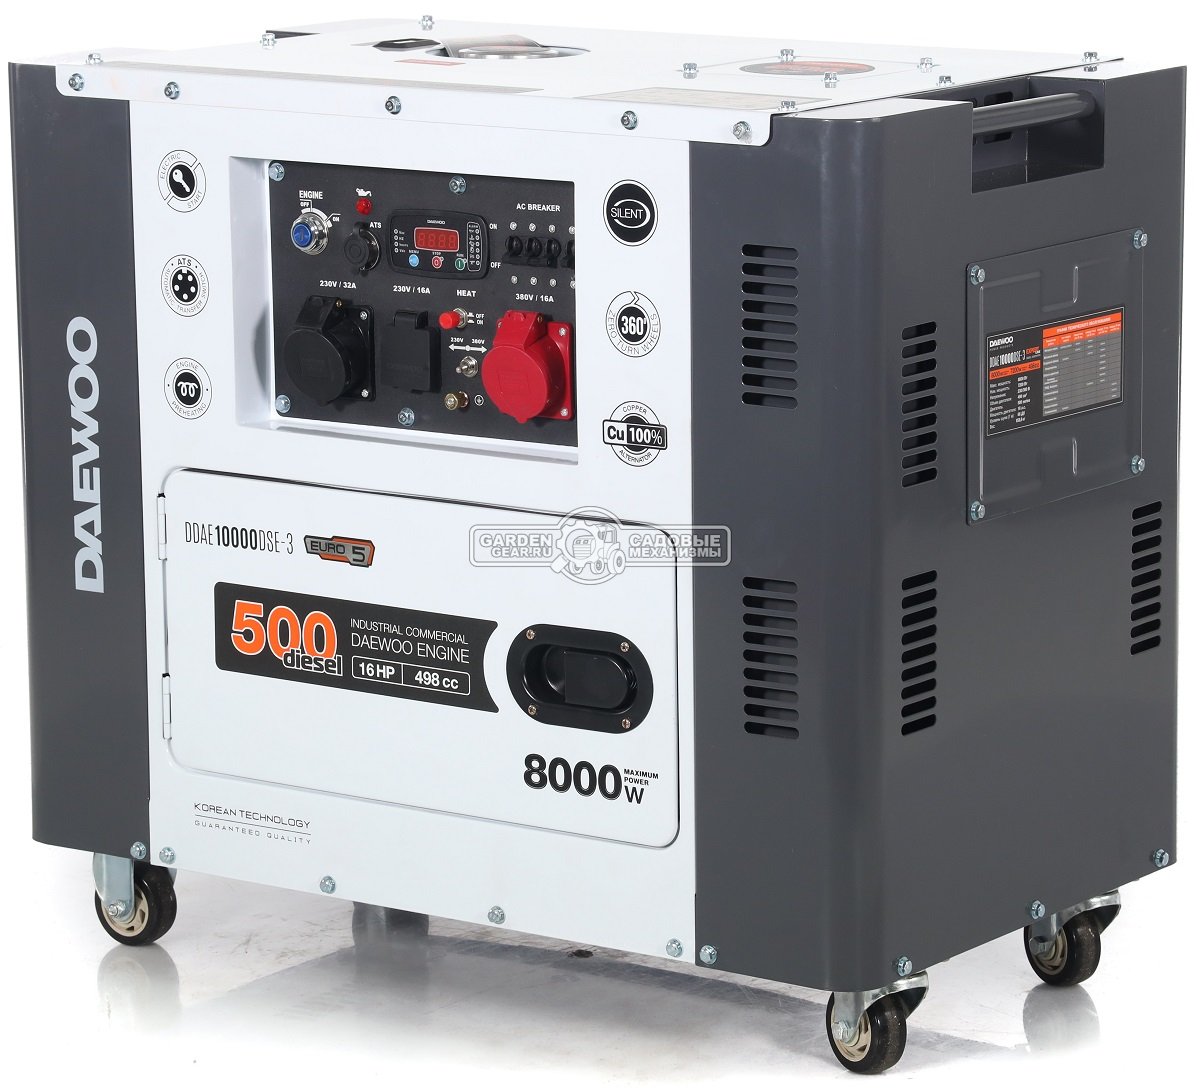 Дизельный генератор Daewoo DDAE 10000DSE-3 двухрежимный в шумозащитном кожухе (PRC, 498 см3, 16 л.с, 7,2/8,0 кВт, колеса, ATS, 15 л, 158,6 кг.)